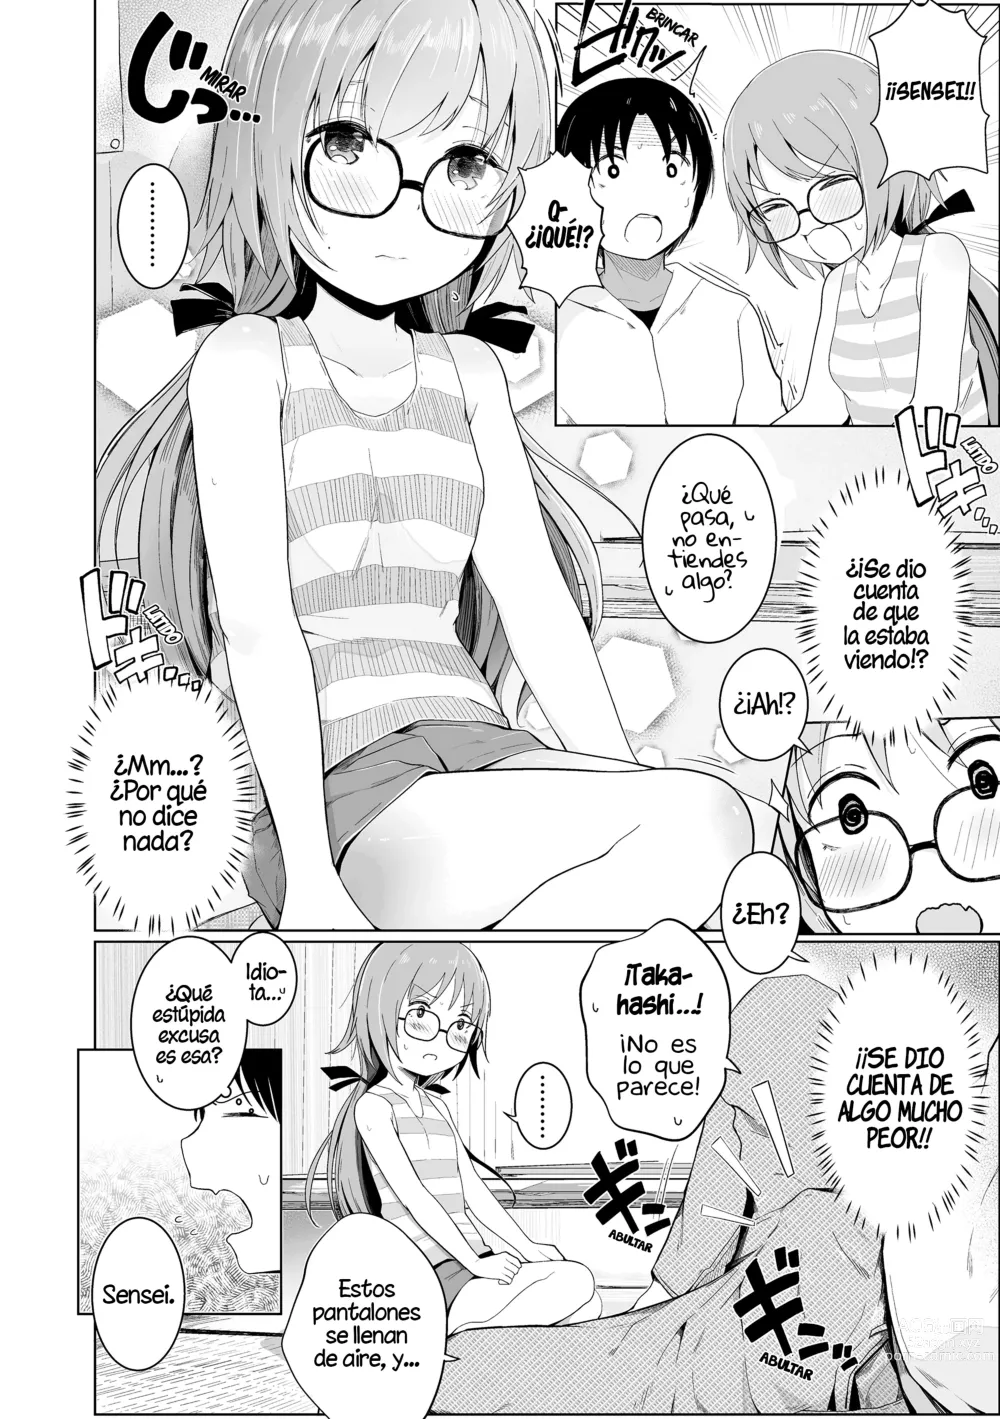 Page 4 of manga ¡Por favor, Sensei!